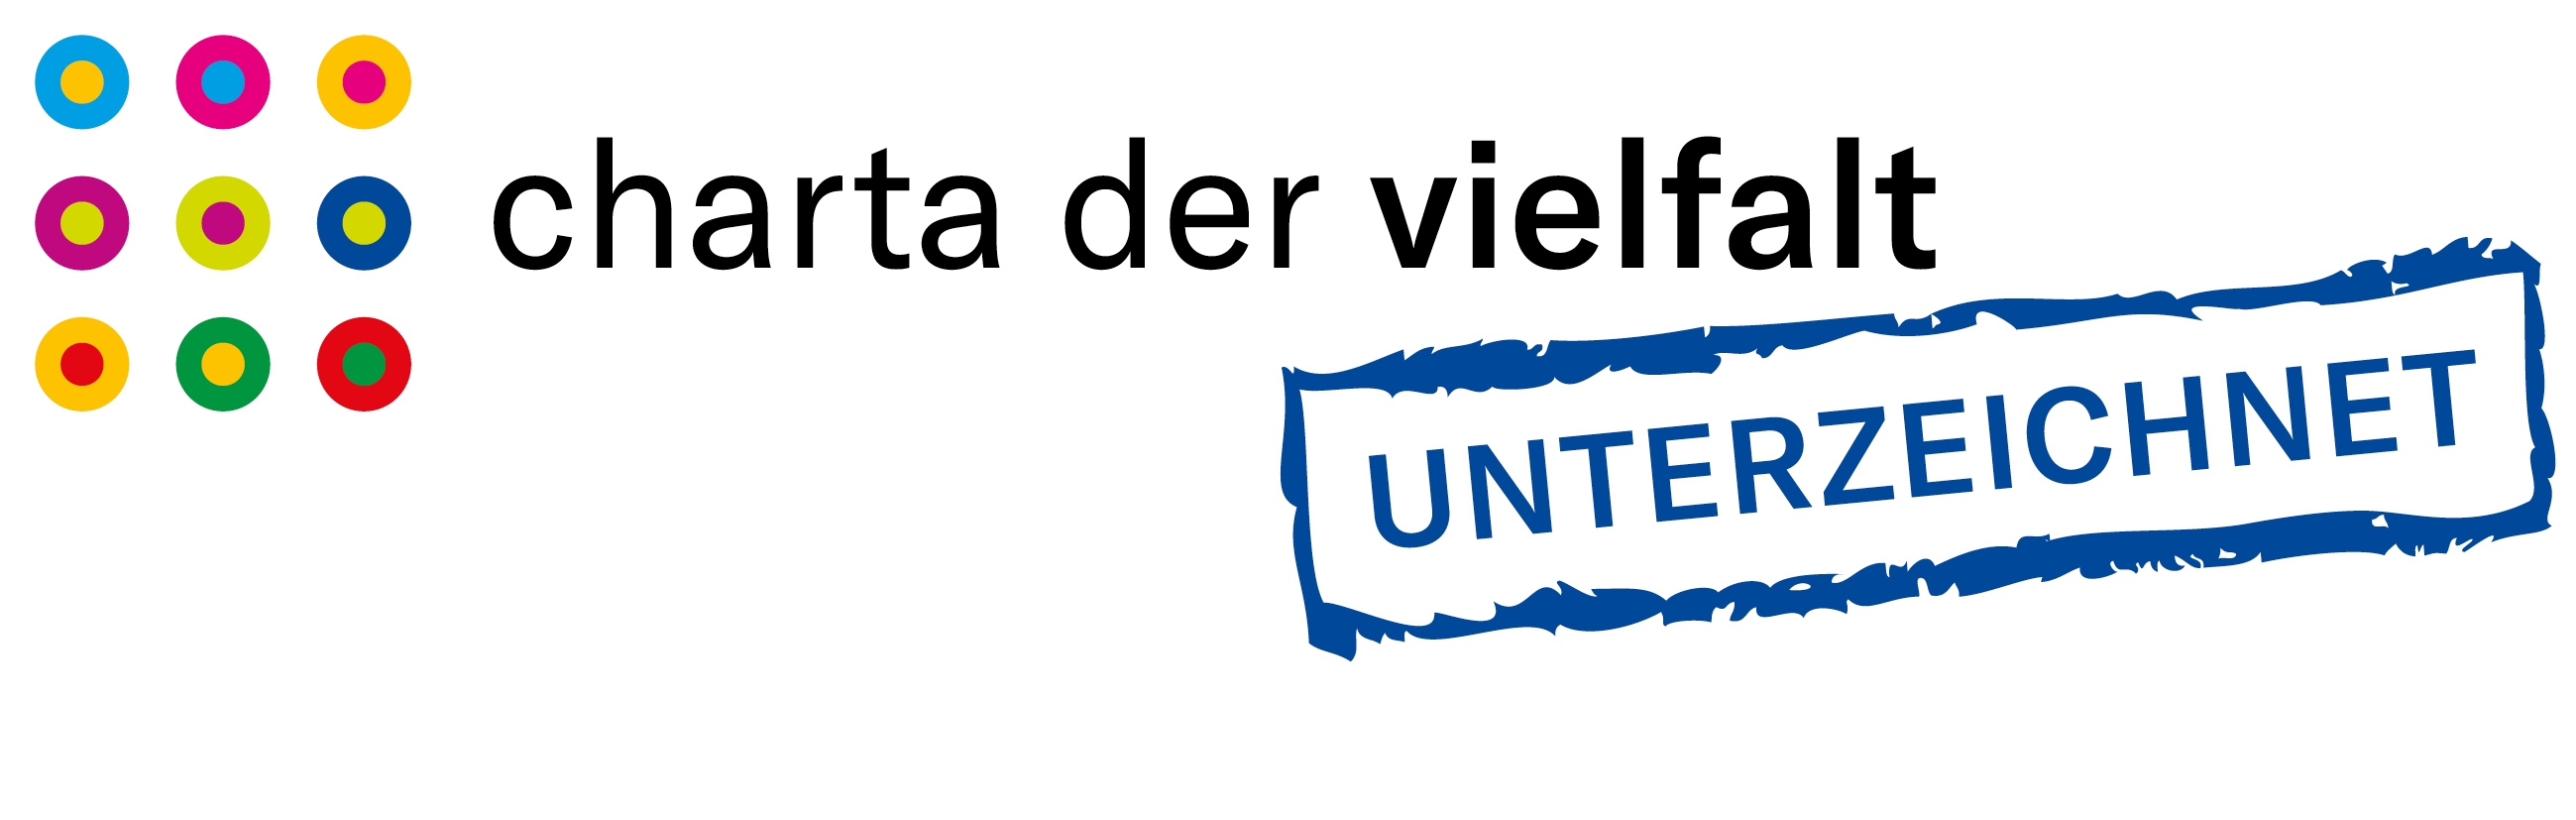 Logo Charta der Vielfalt: zur Website